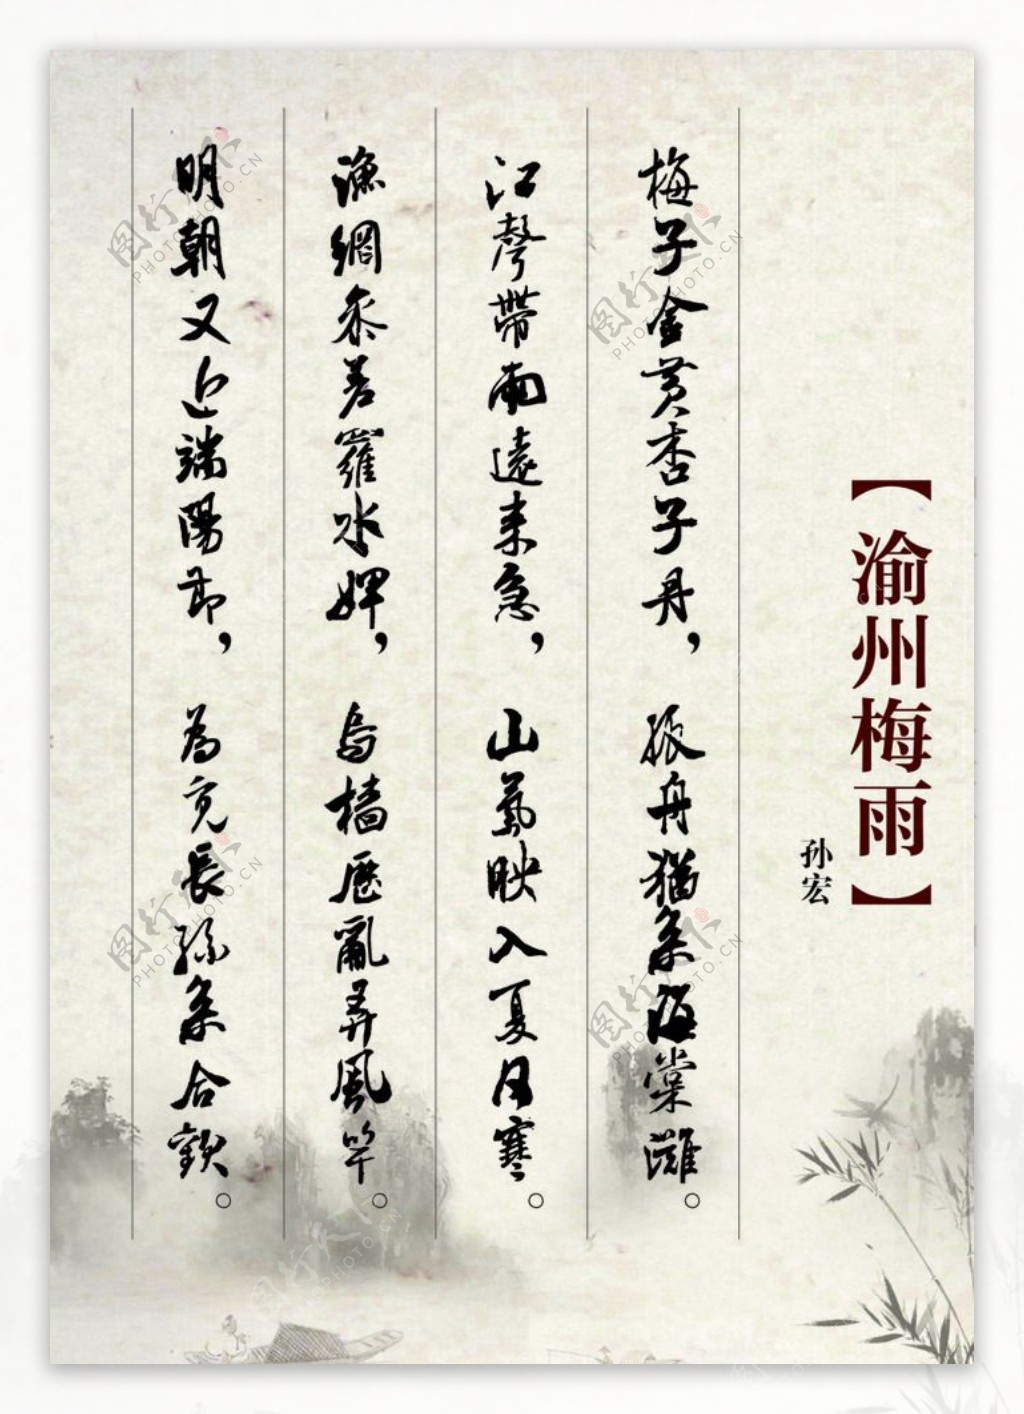 渝州梅雨古诗展板图片